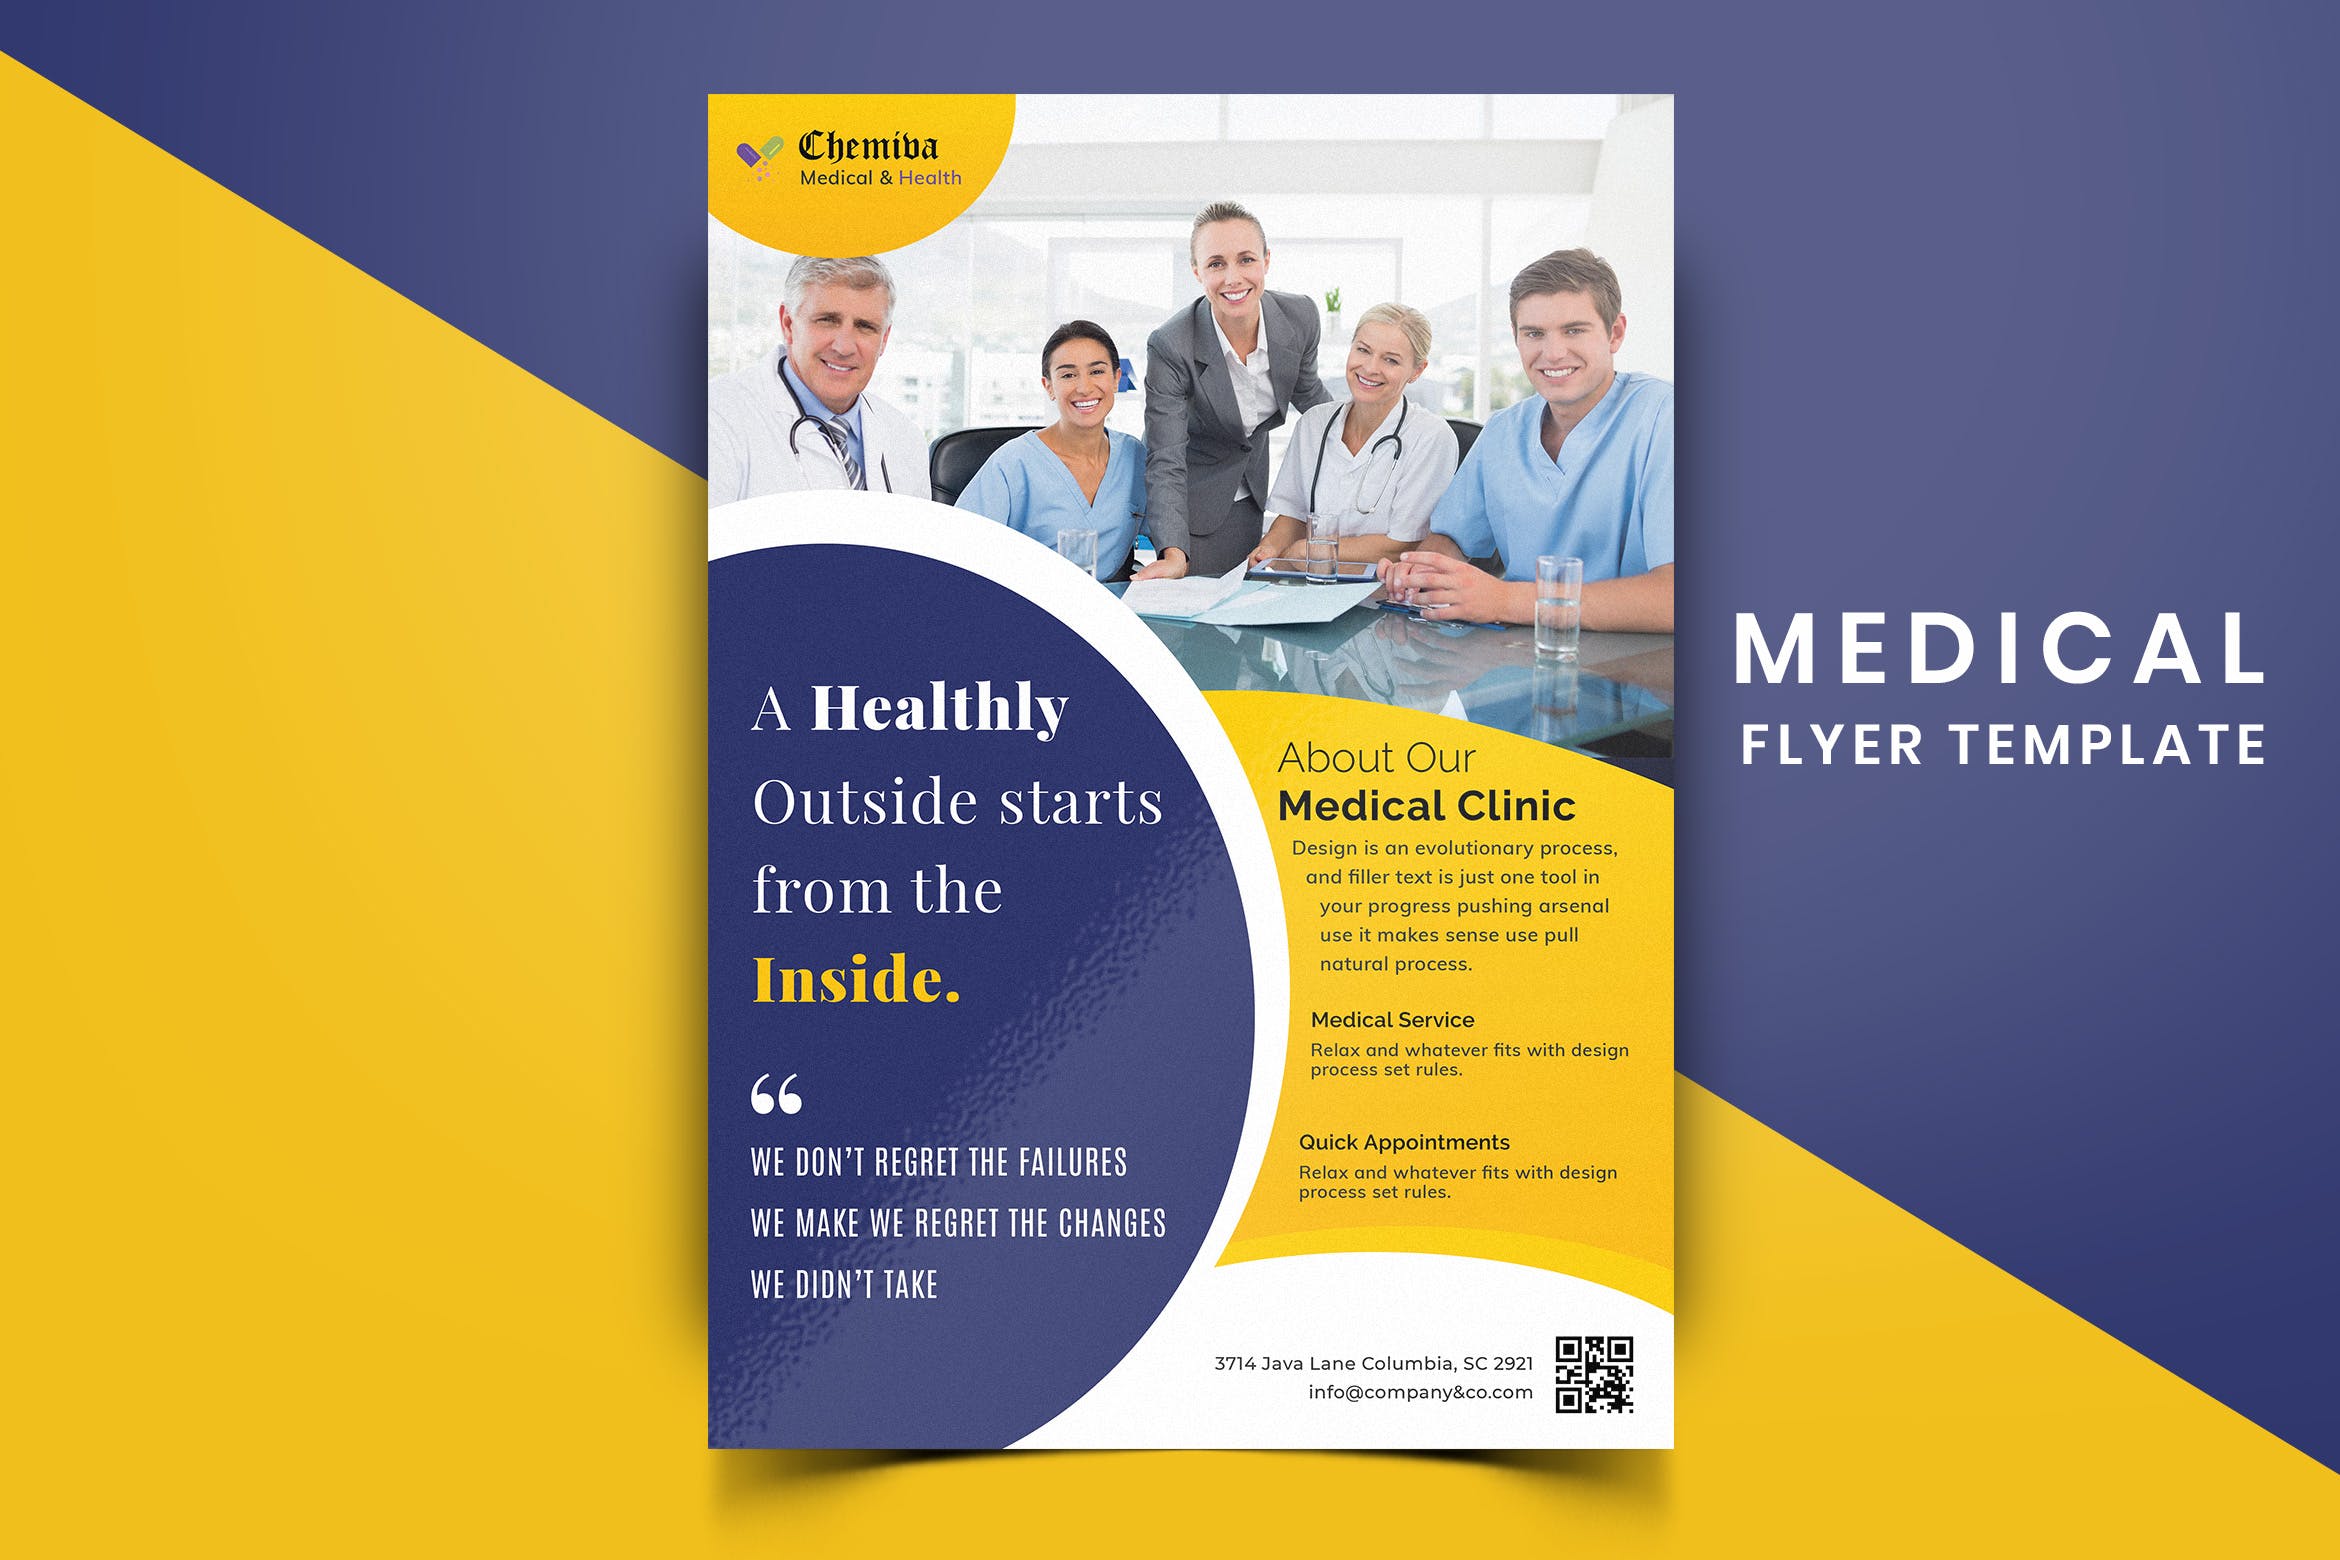 医院诊所医疗主题宣传单排版设计模板v03 Medical Flyer Template-03插图